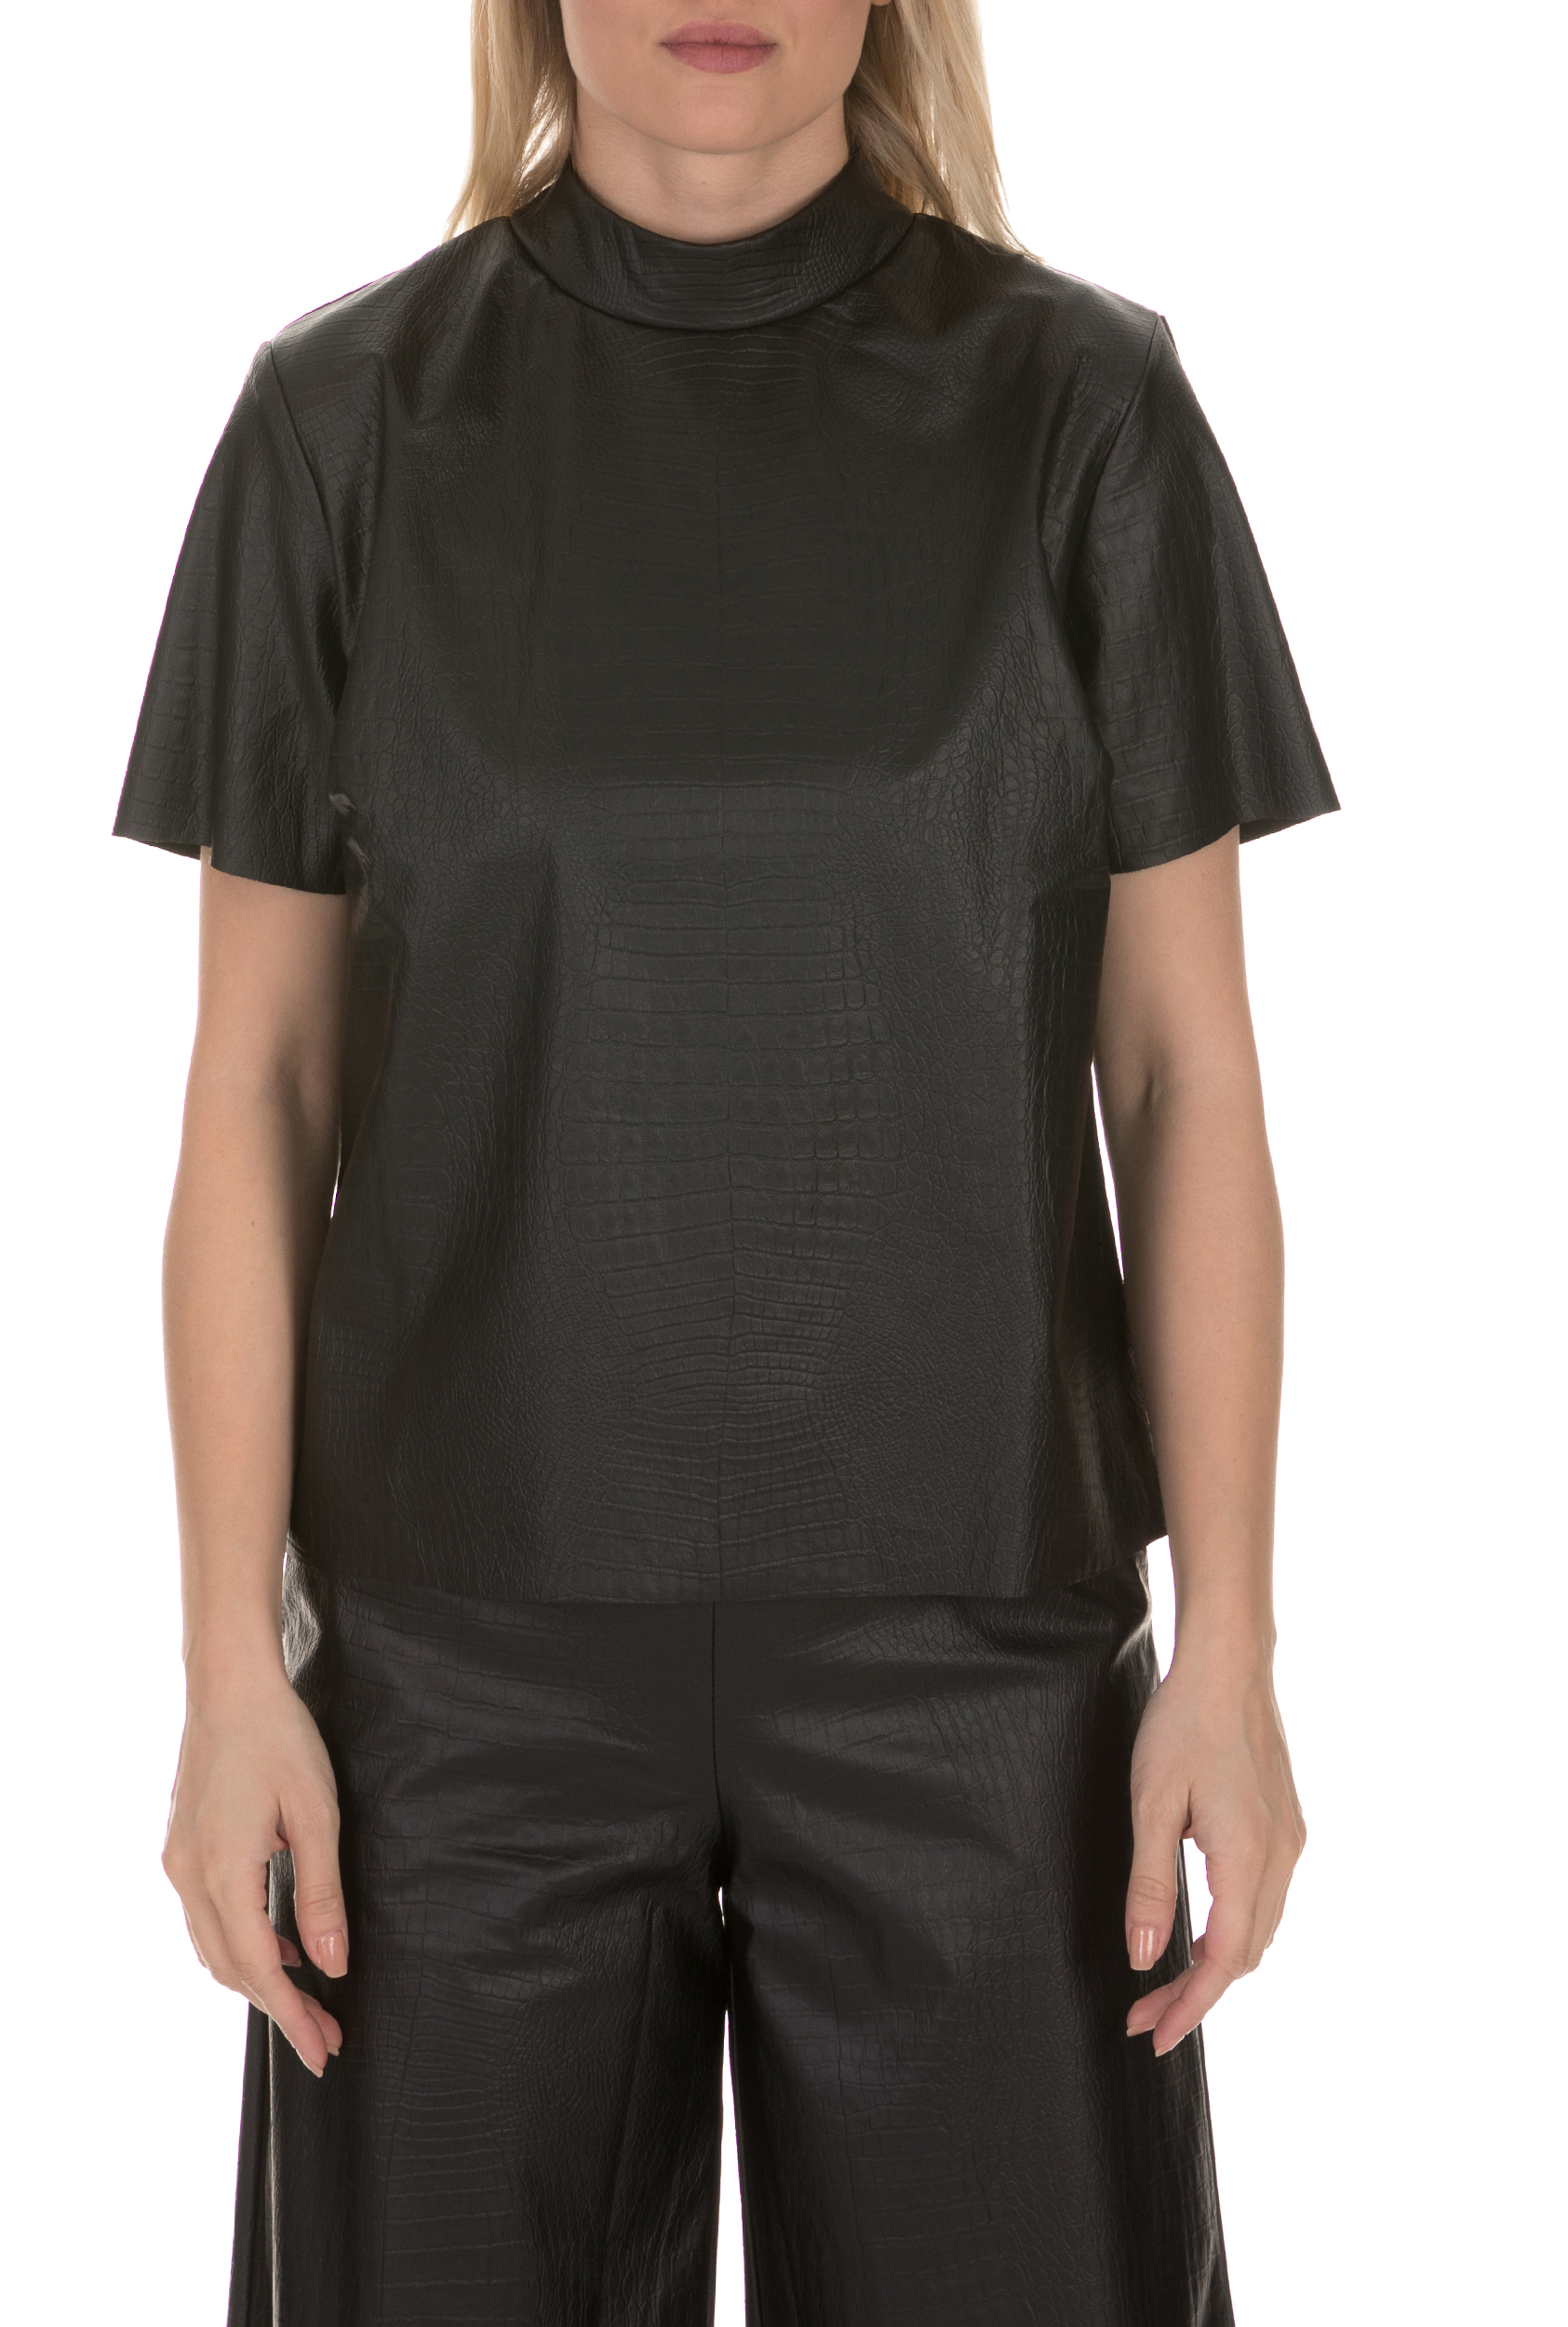 LA DOLLS Γυναικεία δερμάτινη μπλούζα SNAKE LEATHER LA DOLLS μαύρη